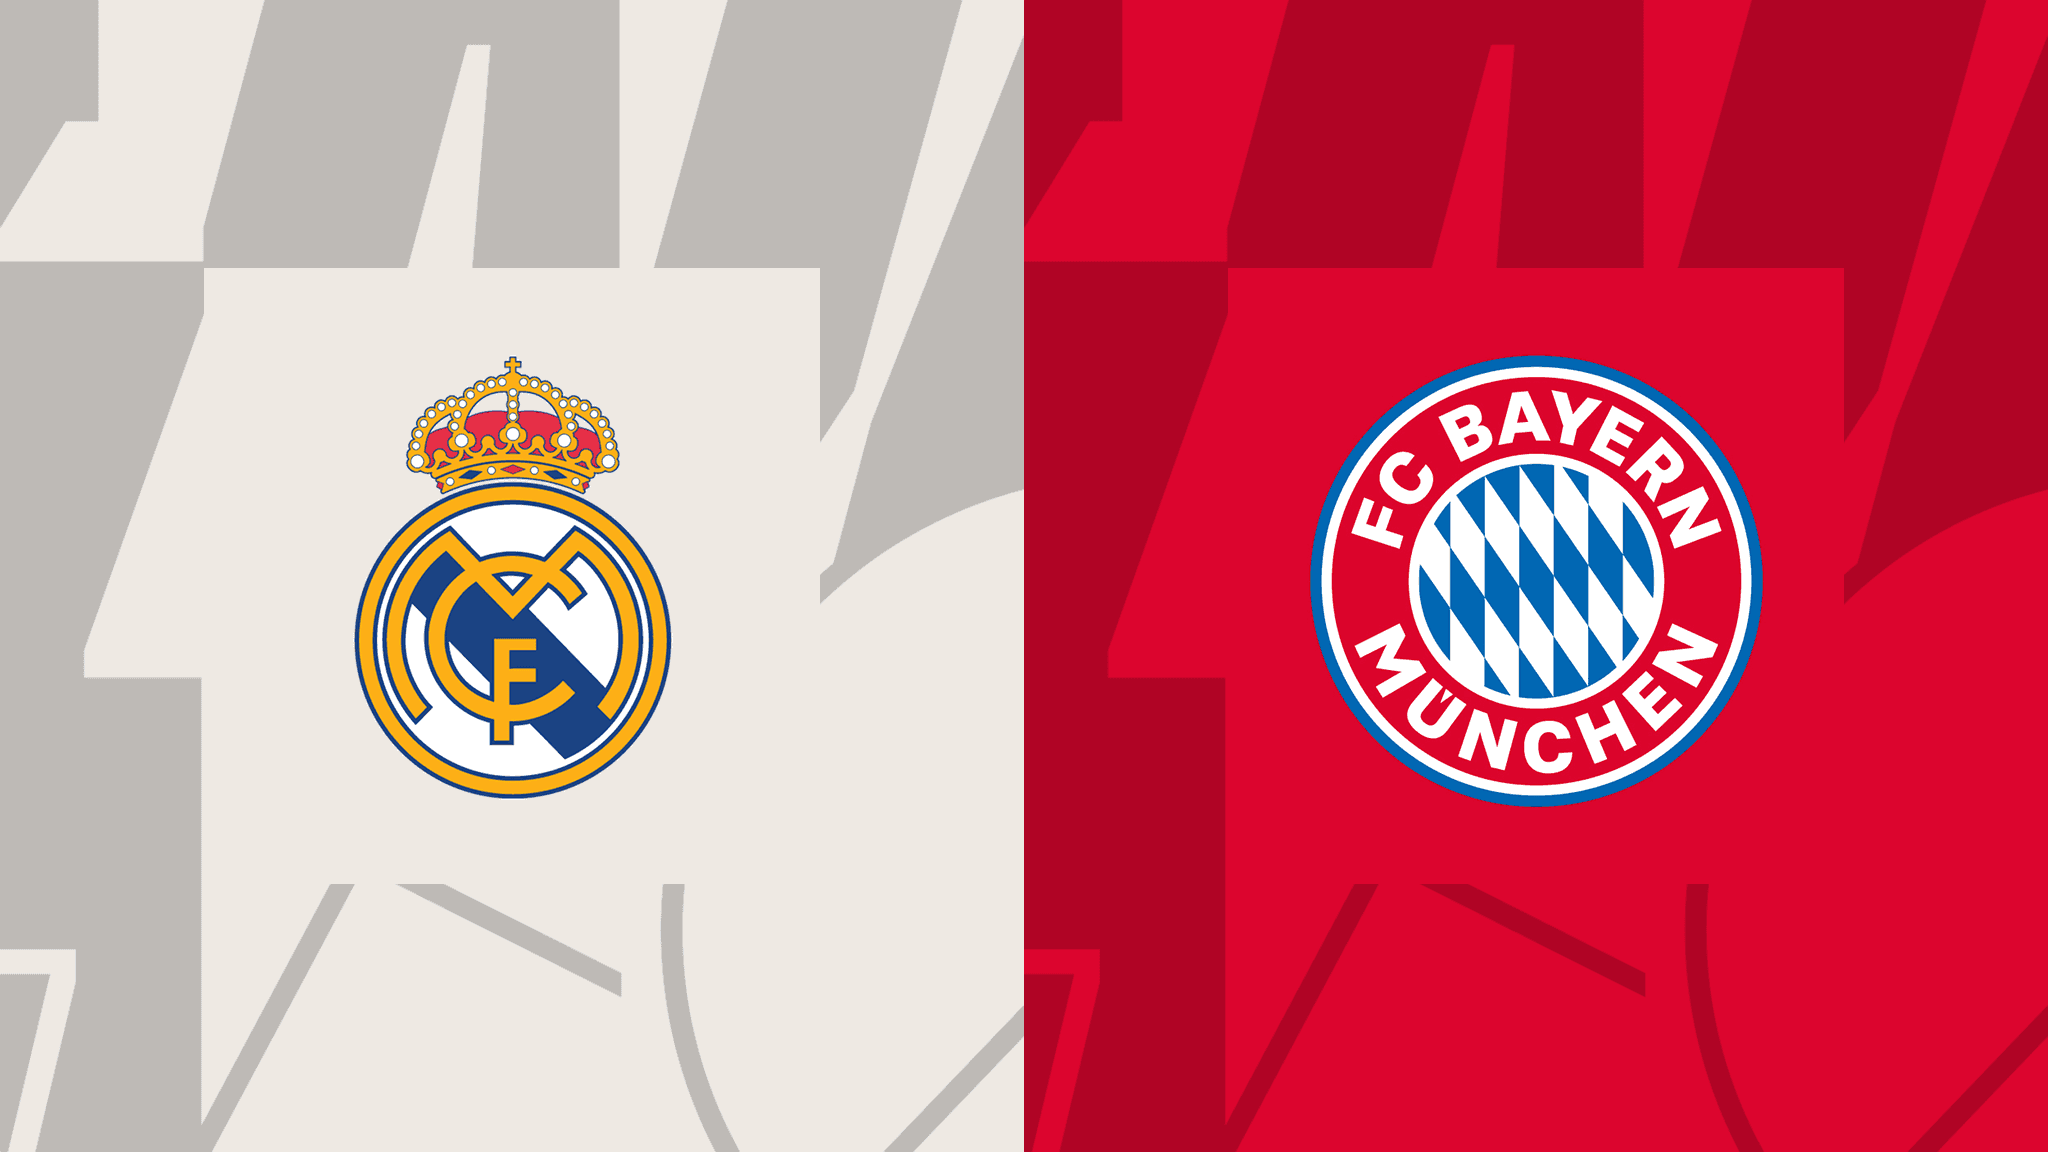 Real Madrid vs Bayern Munchen, (8 May, 21:00)